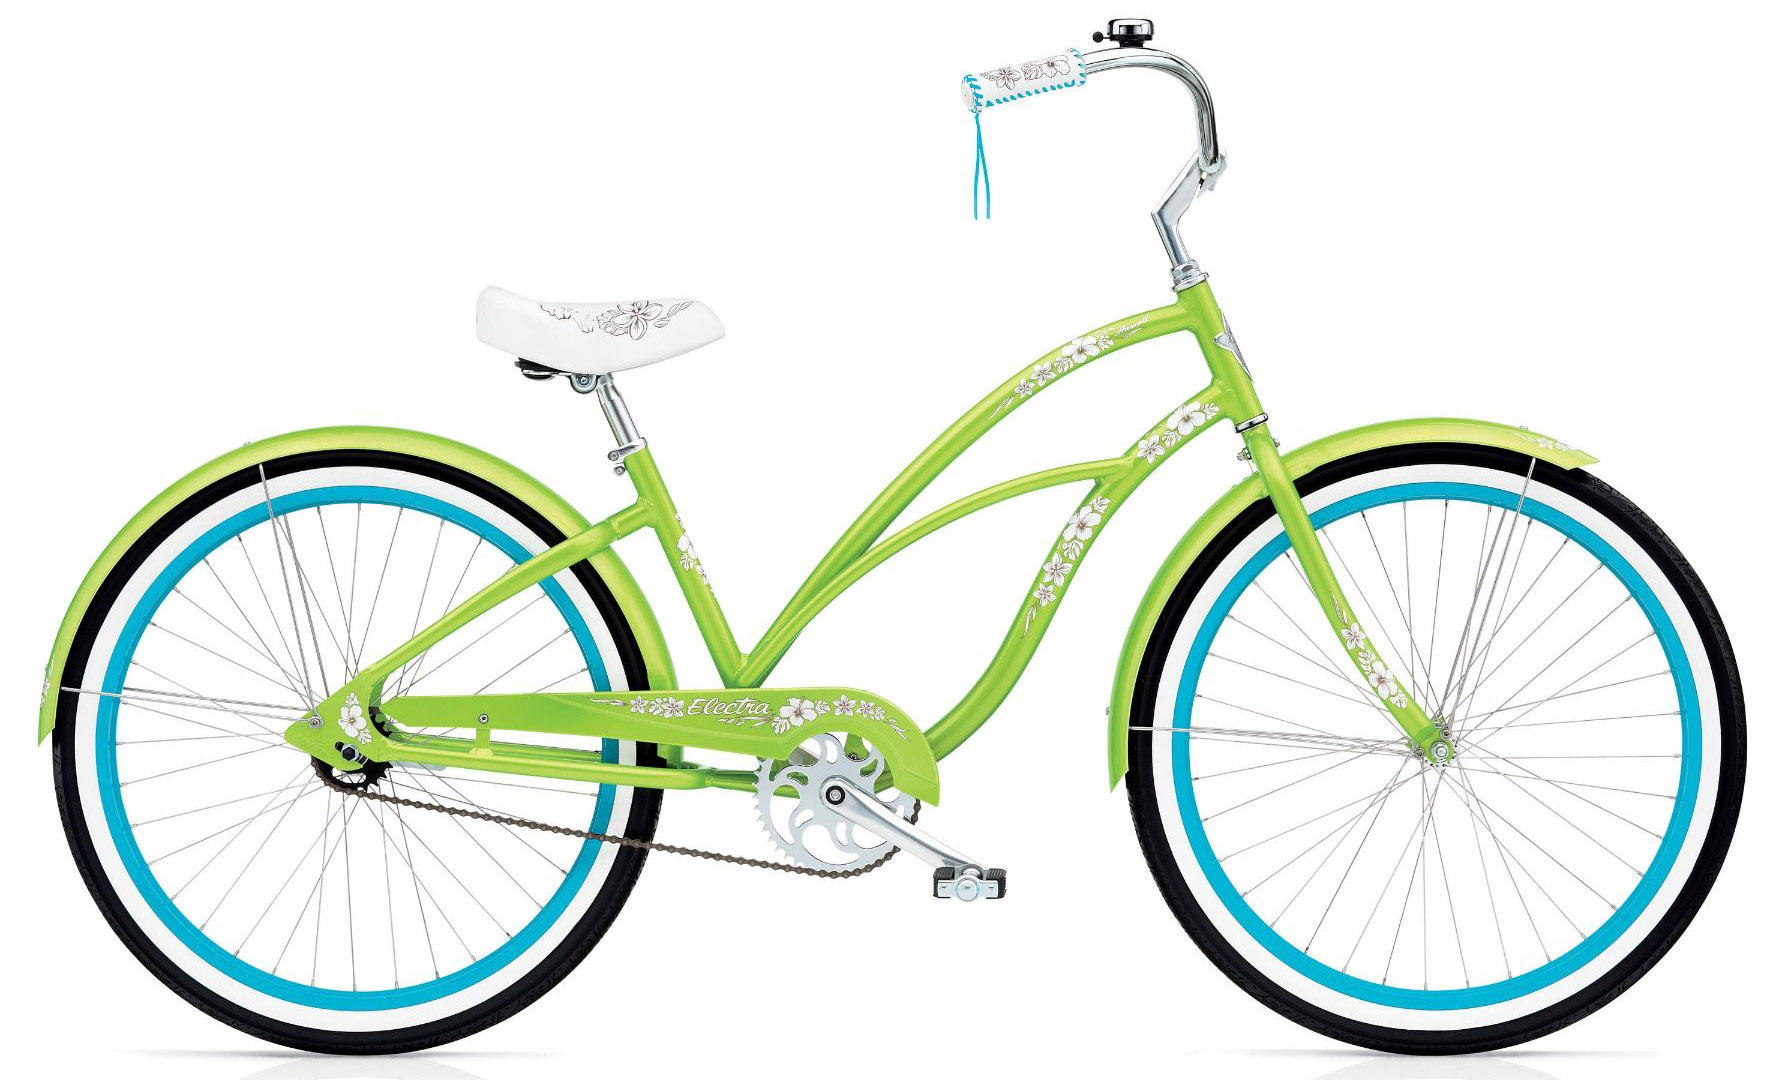  Отзывы о Женском велосипеде Electra Cruiser Hawaii 3i 2020